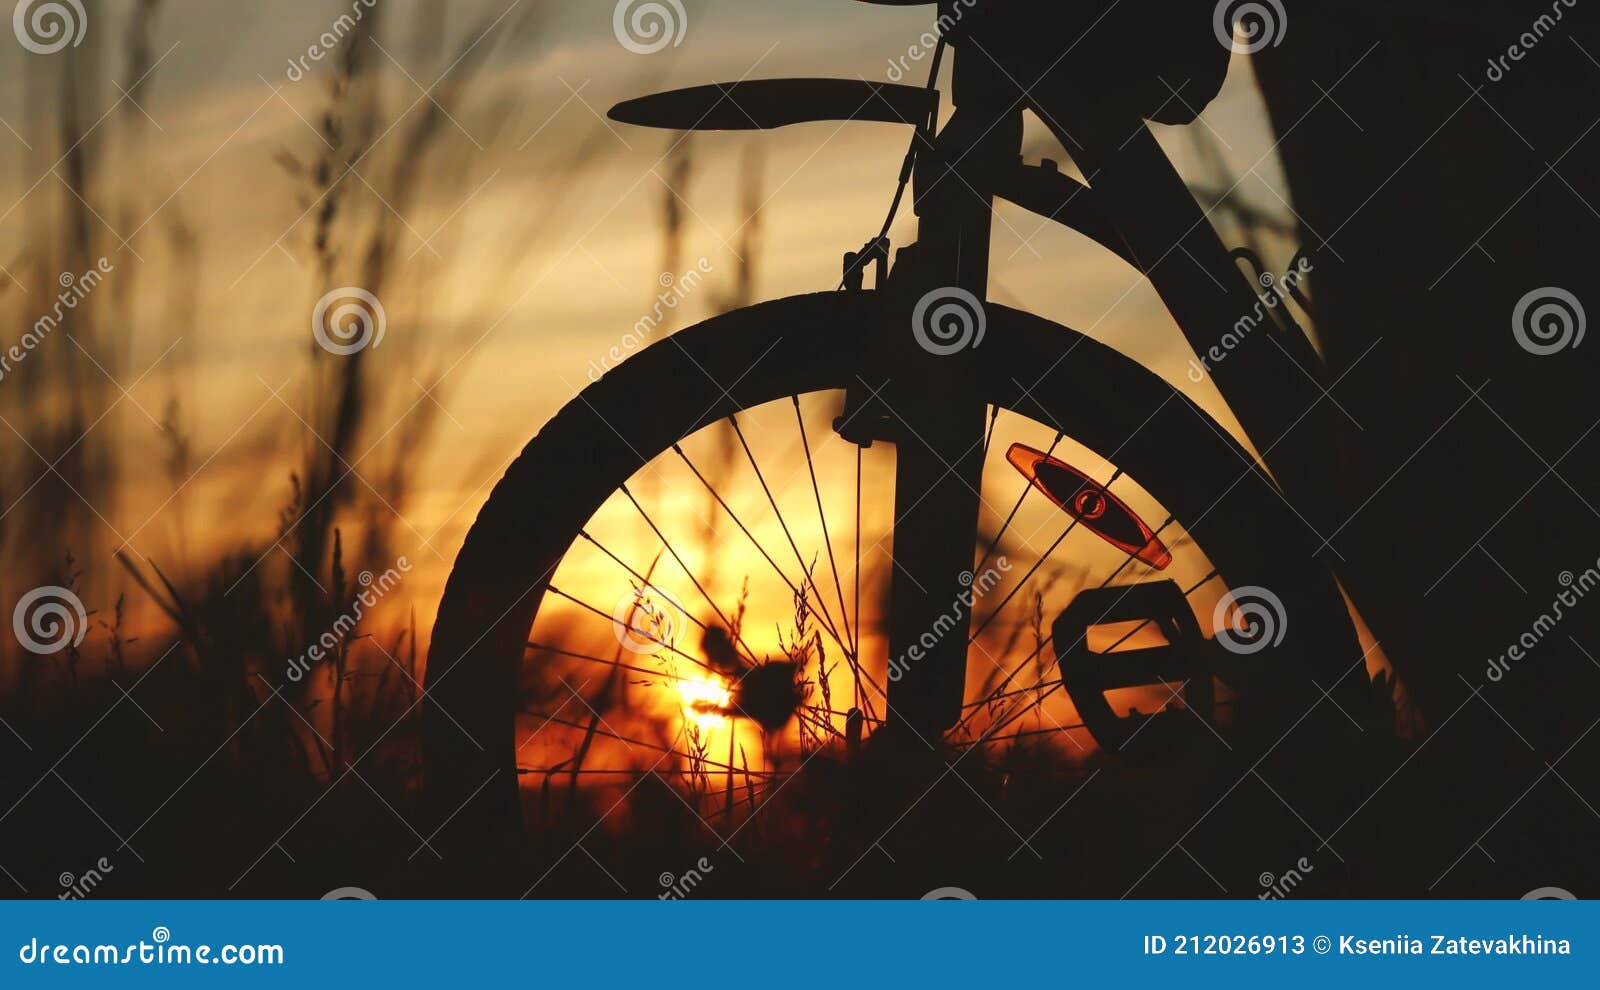 黄昏自行车插图(黄昏、自行车、骑车、骑手、剪影、夕阳、日落、树木、插图)日系插图_北极熊素材库